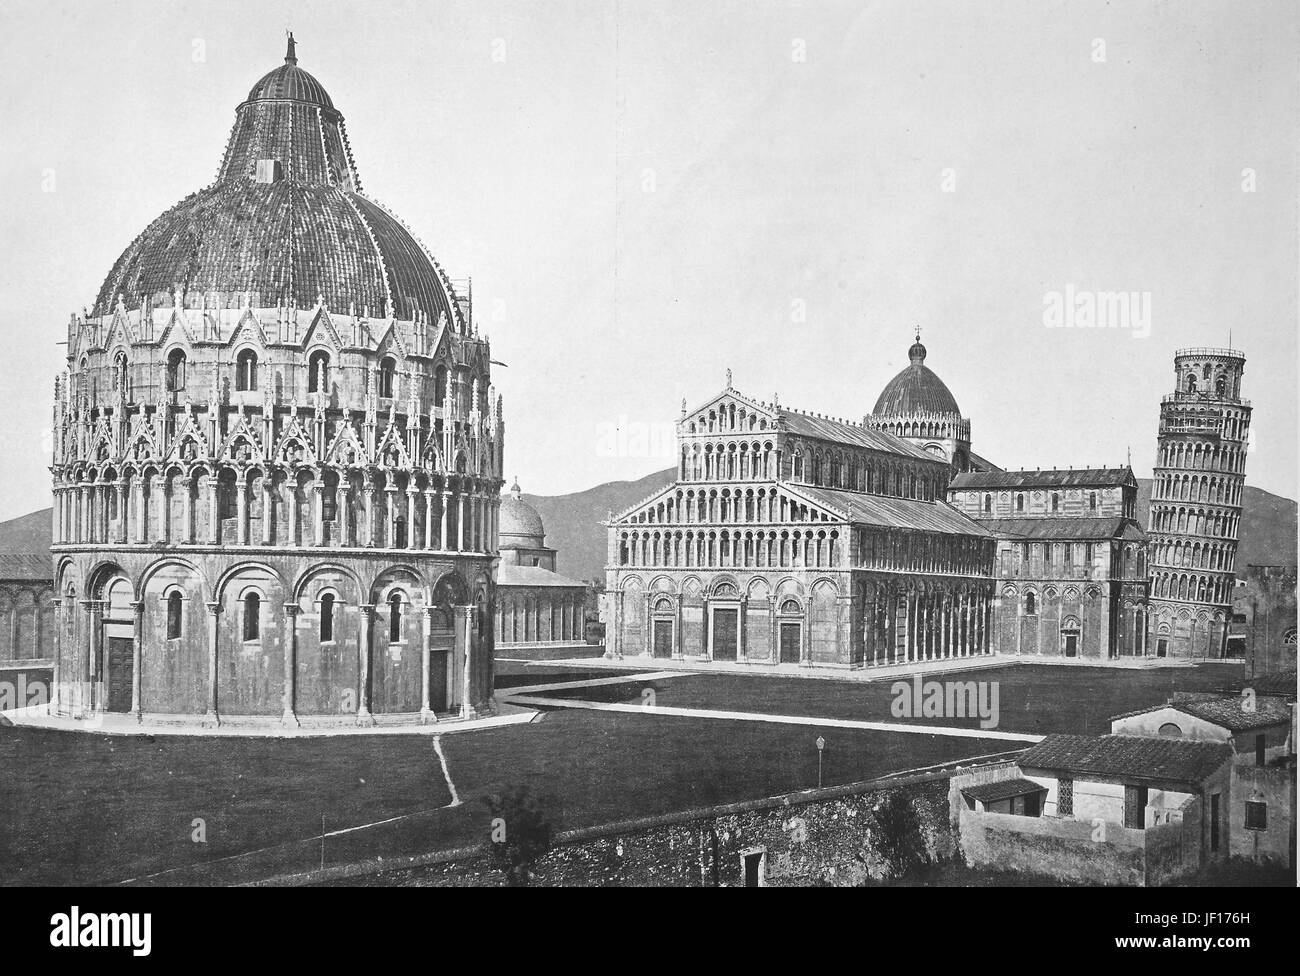 Photo historique de Pise, vue sur la Piazza dei Miracoli, Tour de Pise et baptistère, Toscane, Italie, amélioration numérique reproduction à partir d'un tirage original de 1890 Banque D'Images